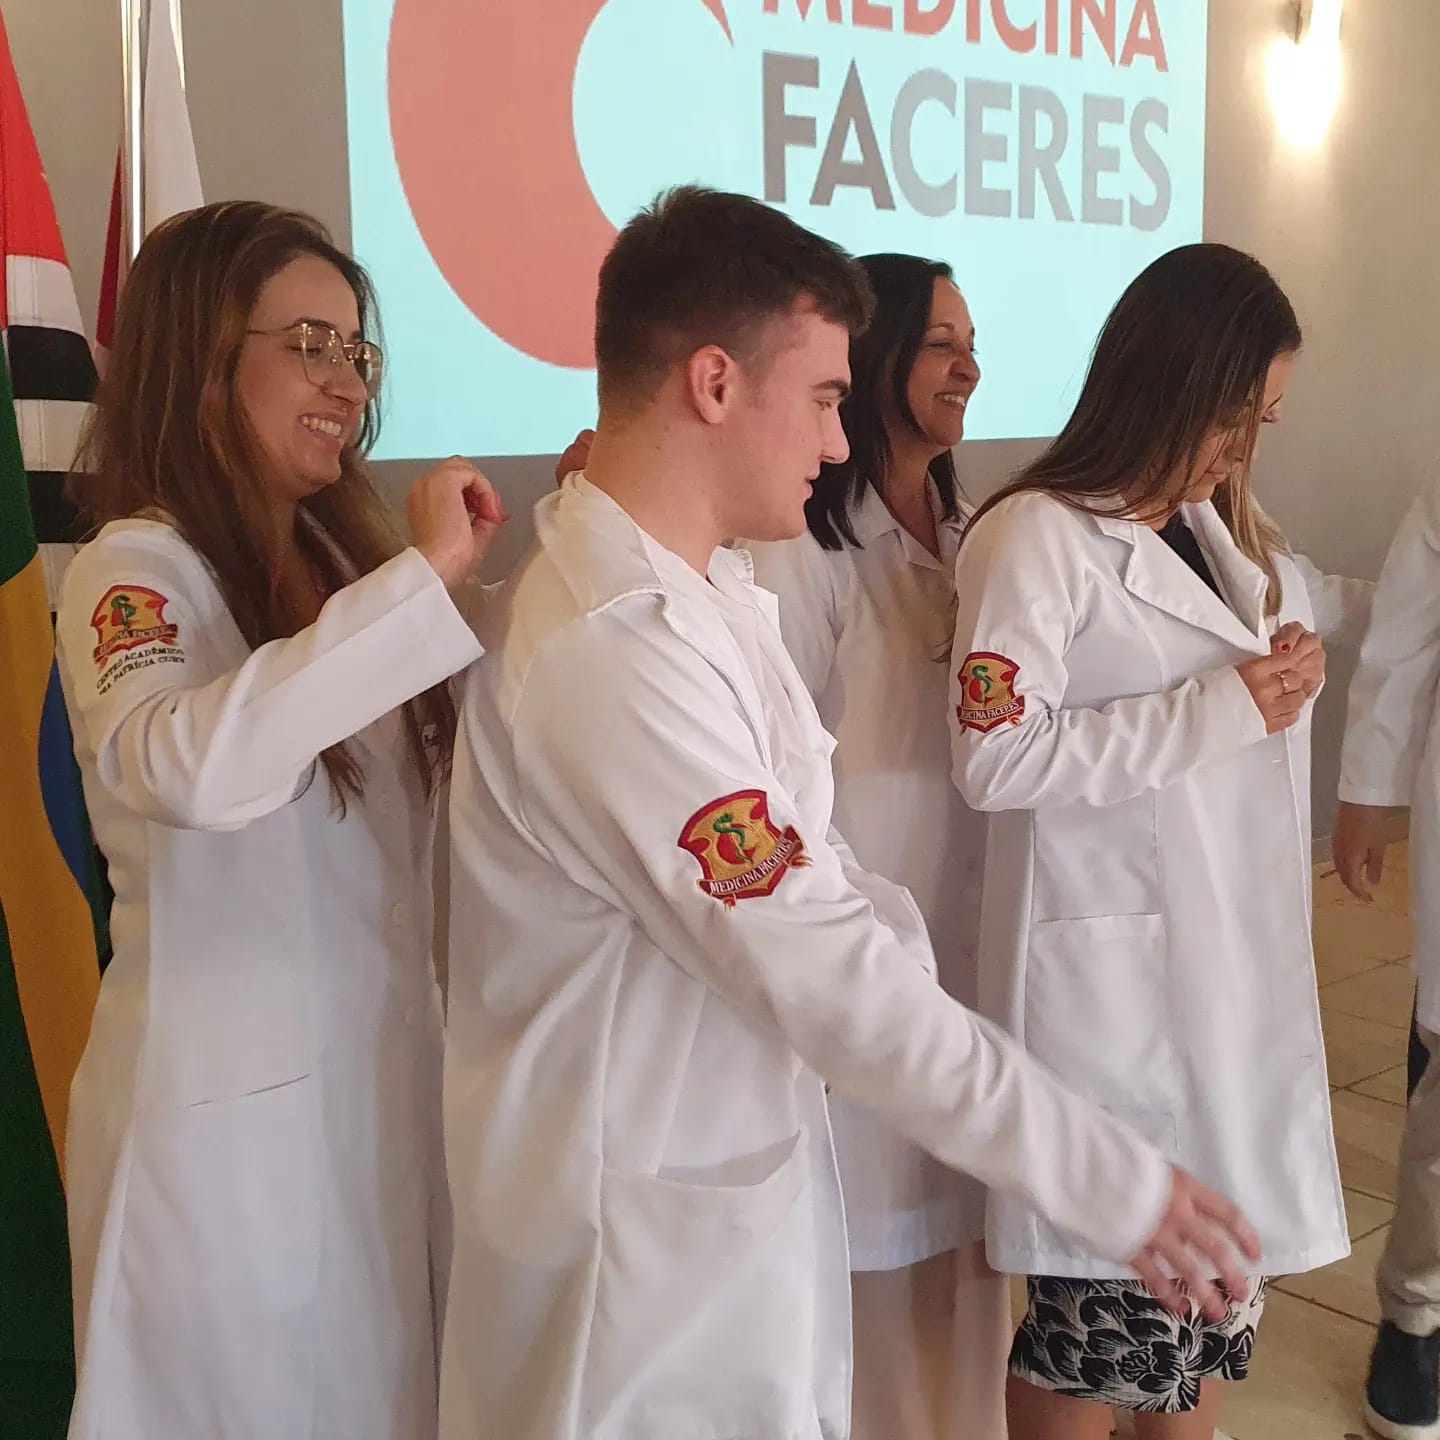 Ingressantes da 23ª turma são recepcionados com apresentação da faculdade de medicina FACERES e Cerimônia do Jaleco Branco